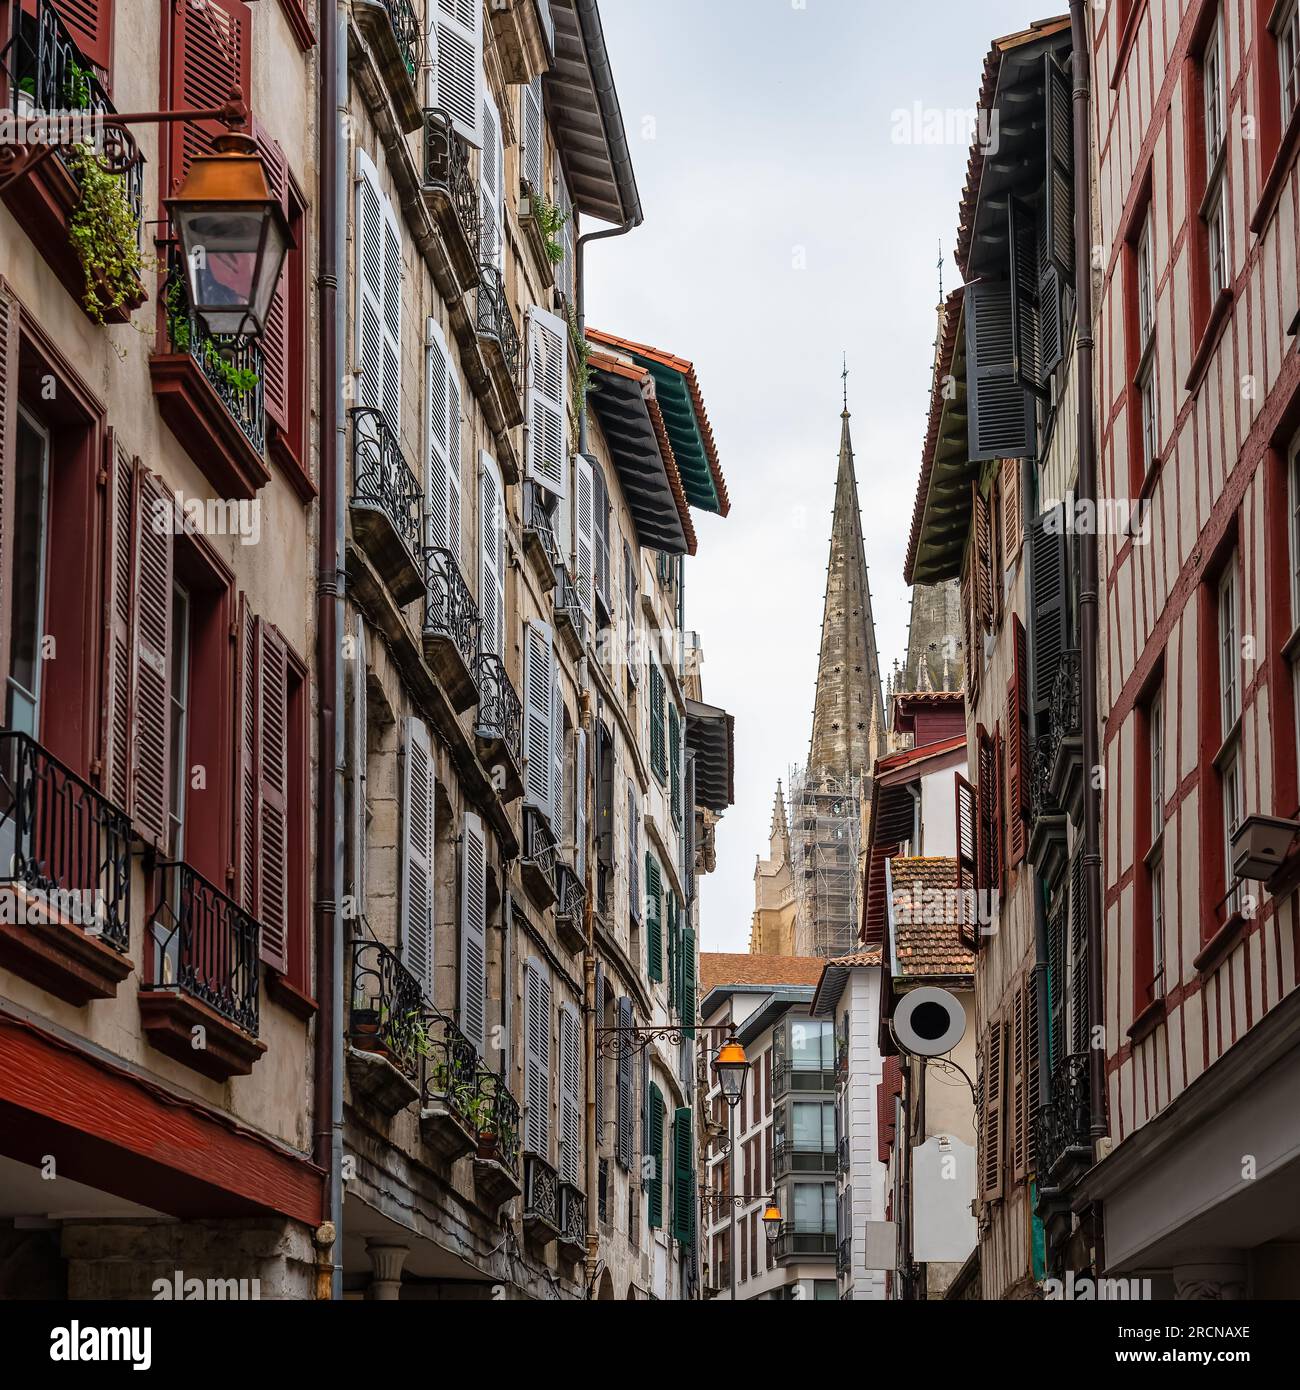 Calle con tipicas casas con la torre de la catedral de Bayona al fondo, Francia. Stock Photo